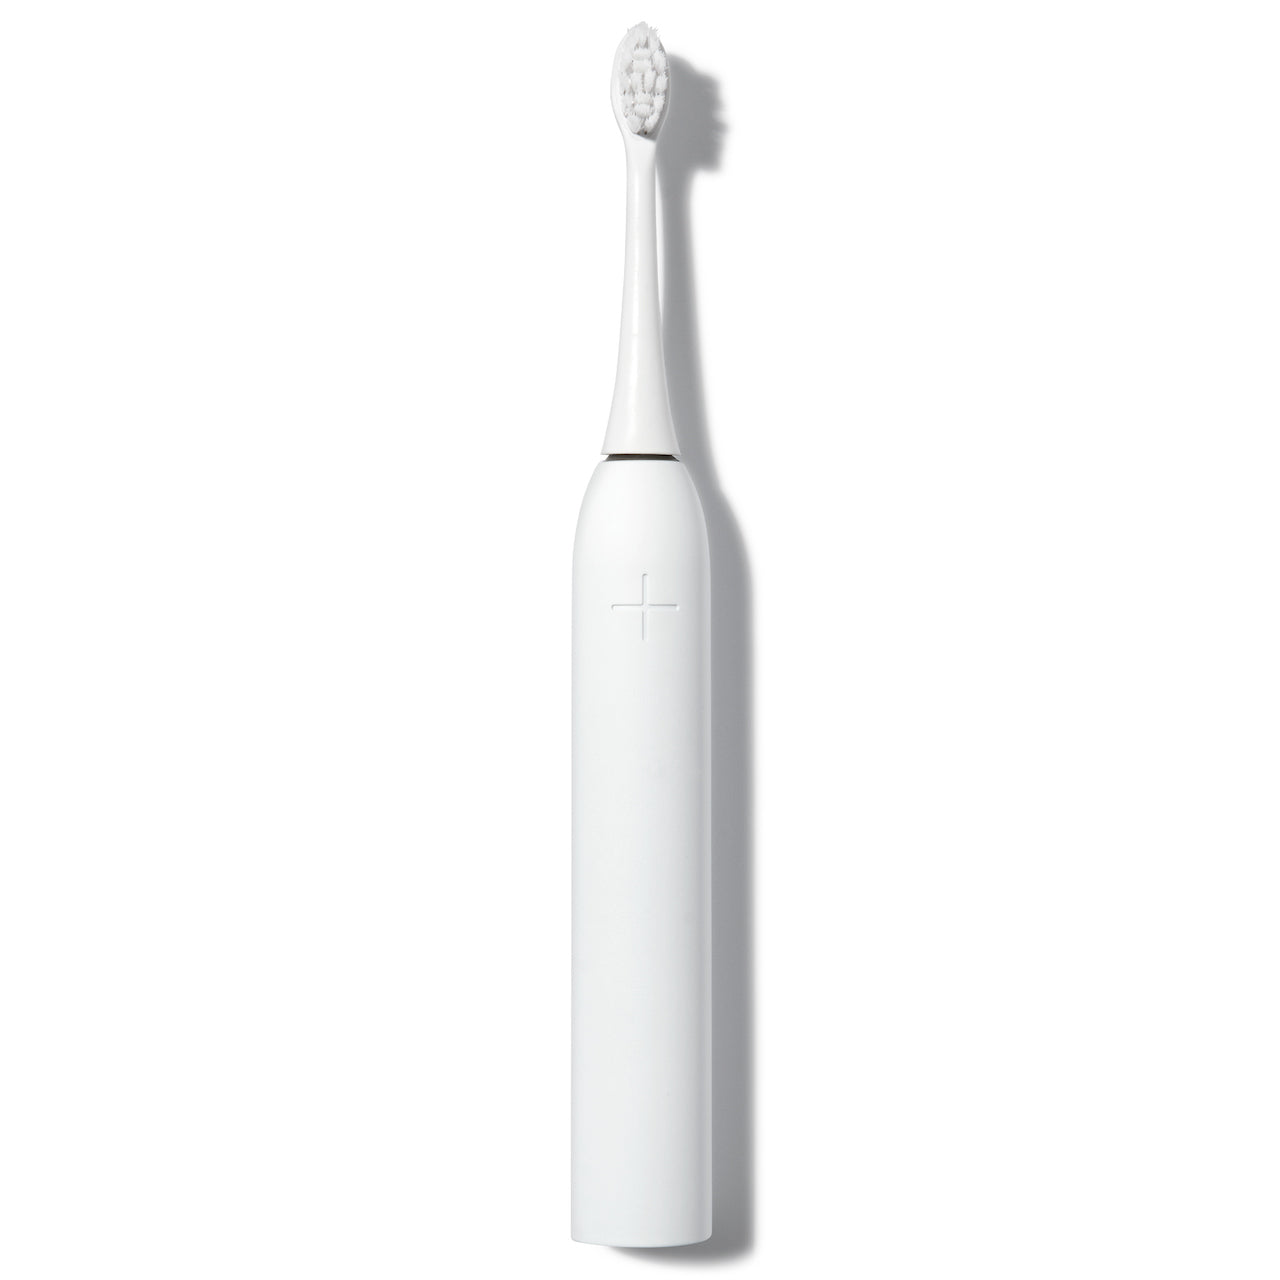 Elektrische Zahnbürste WONDERSMILE Schallzahnbürste Pro Weiß